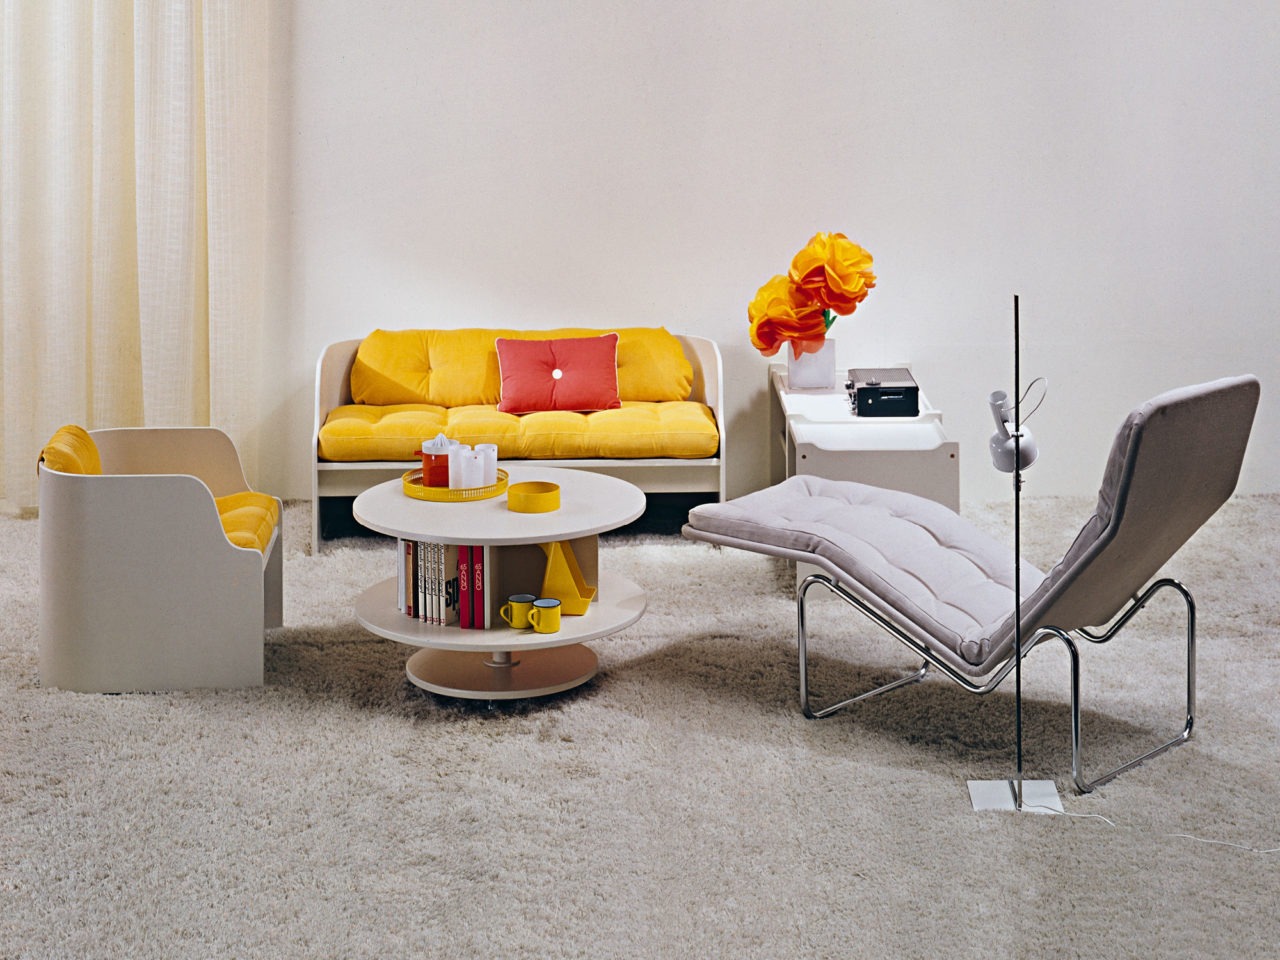 Pièce claire, détails jaunes et rouges. Salon KATINKA en panneaux courbes fins, placés autour d’une table tournante KARUSELL.